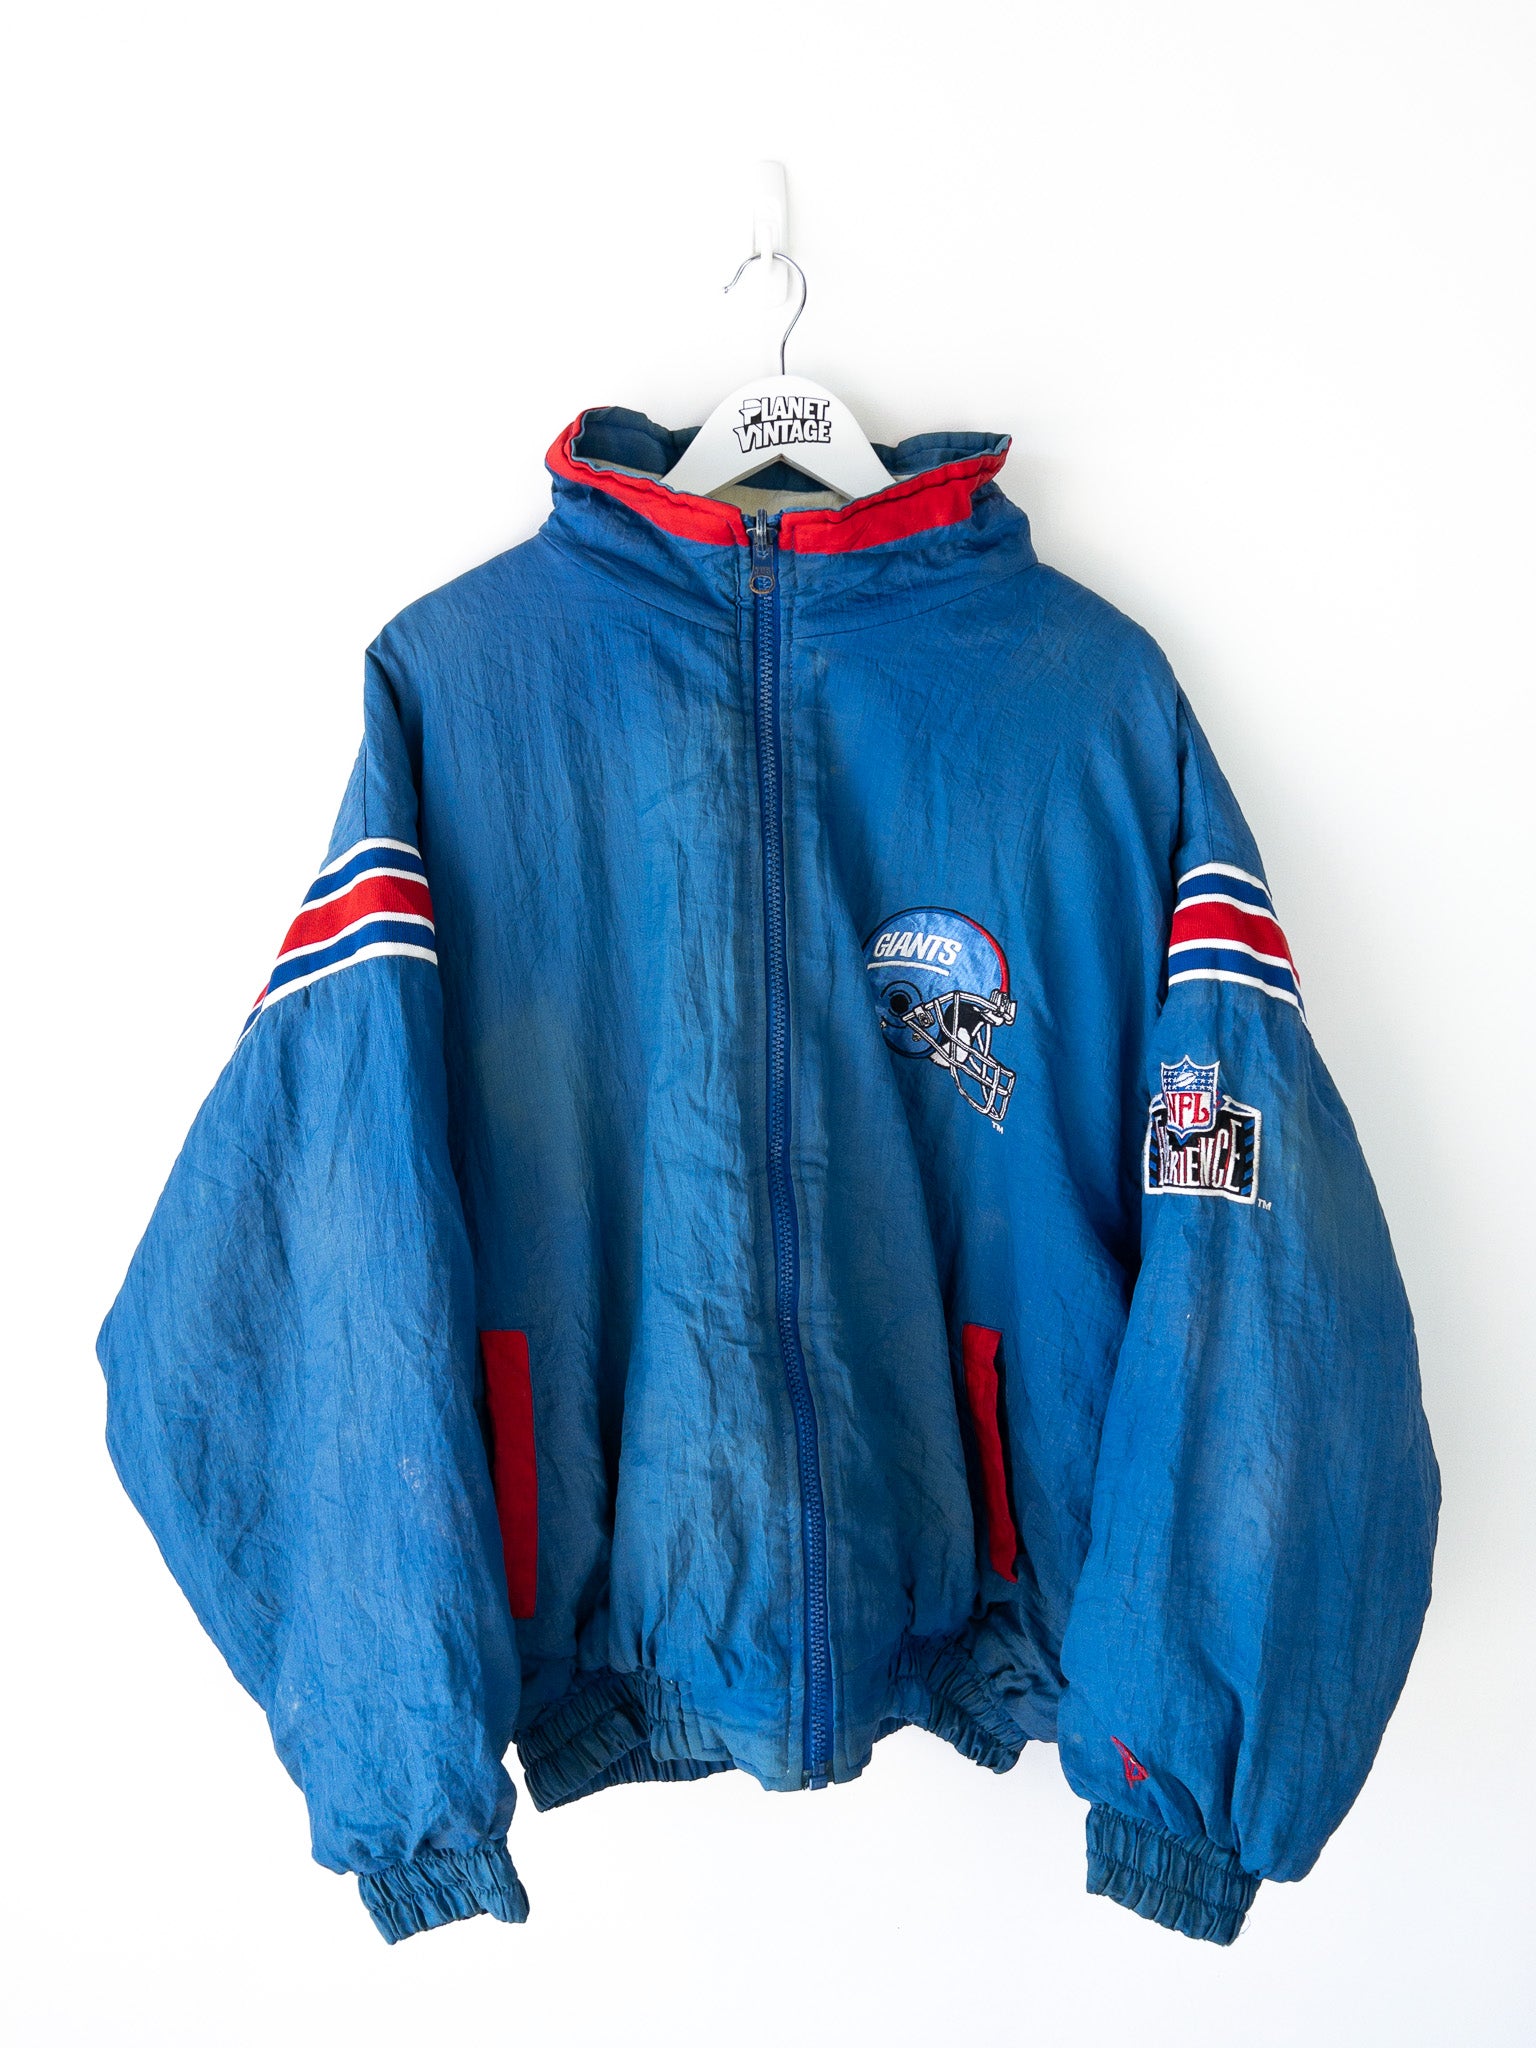 Vintage New York Giants Jacket (XXL)